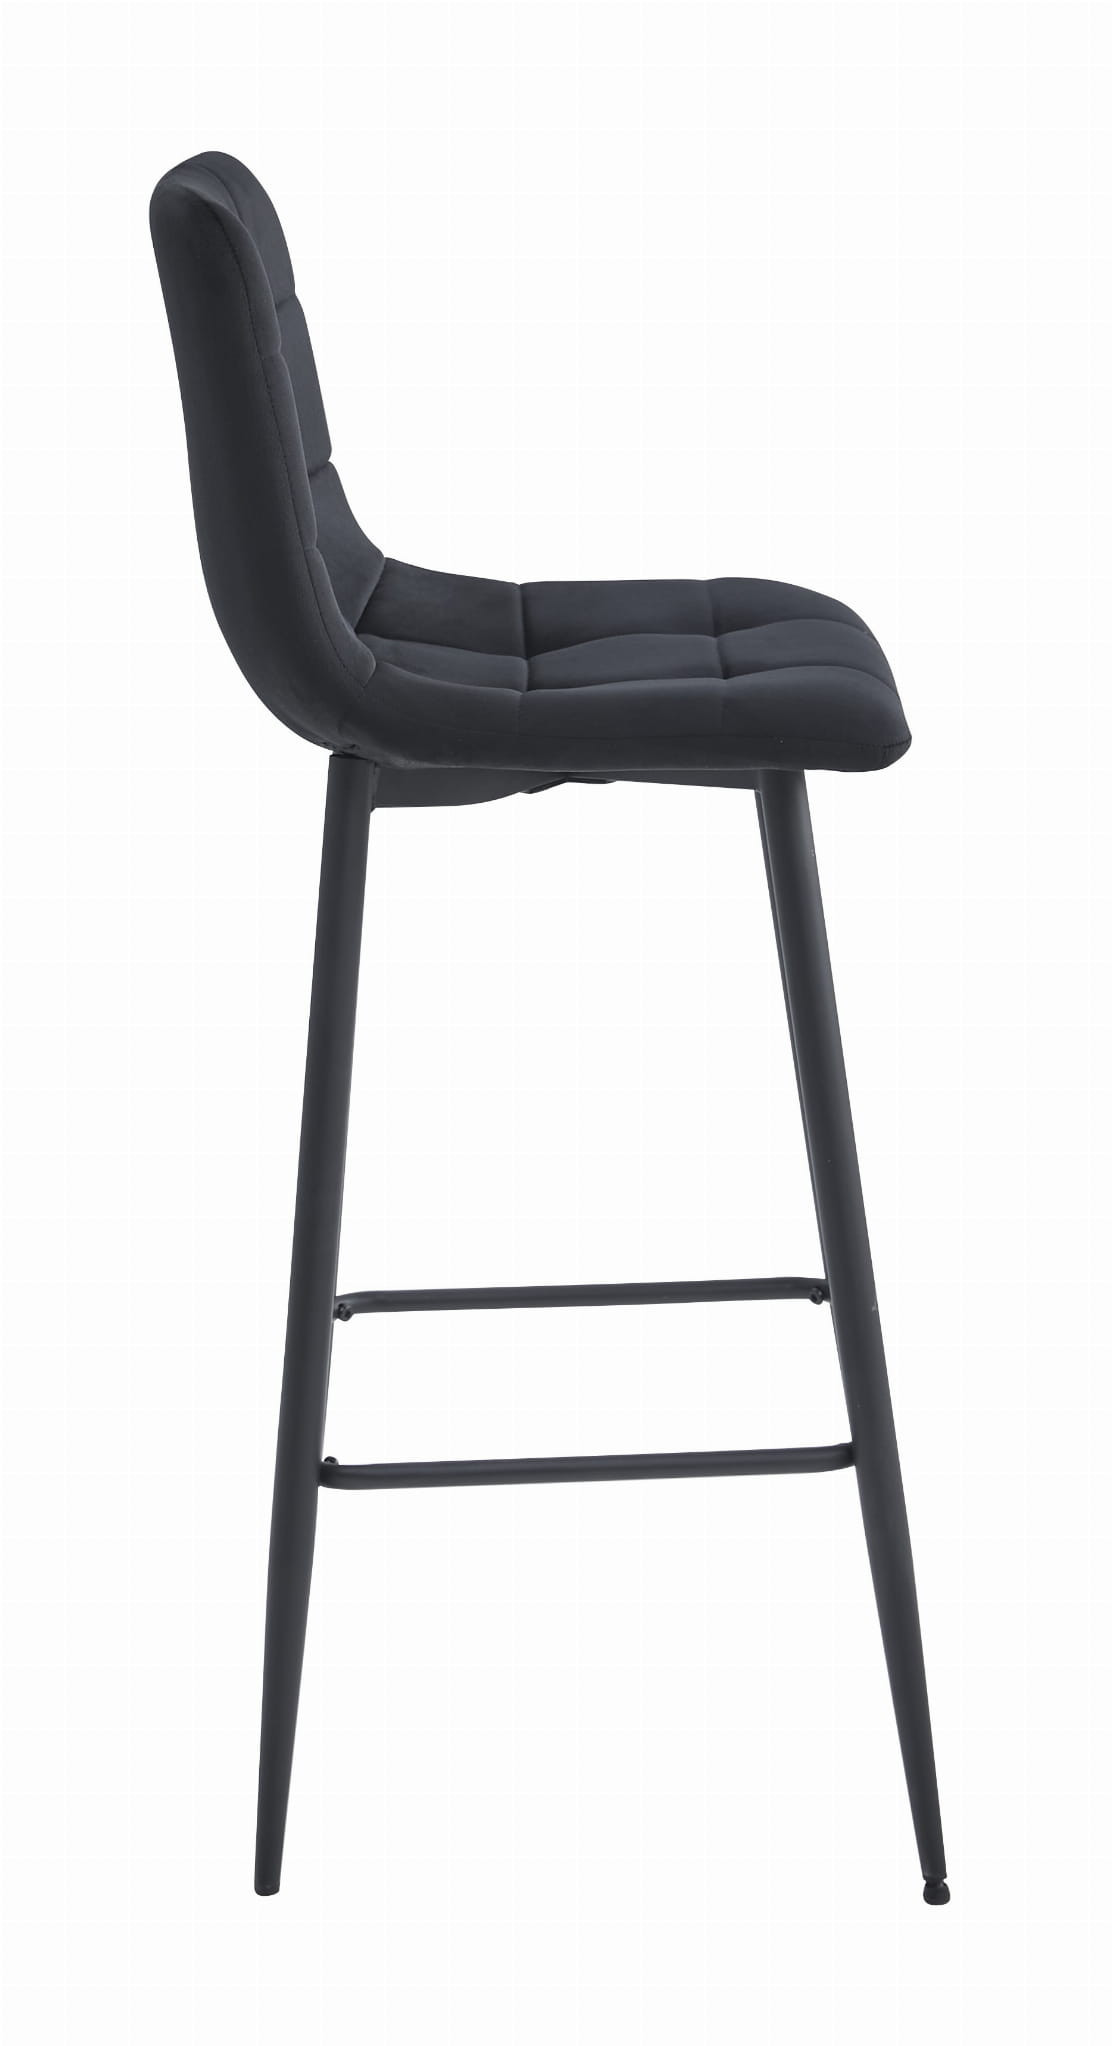 Barová židle ARCETO sametová černá (černé nohy)